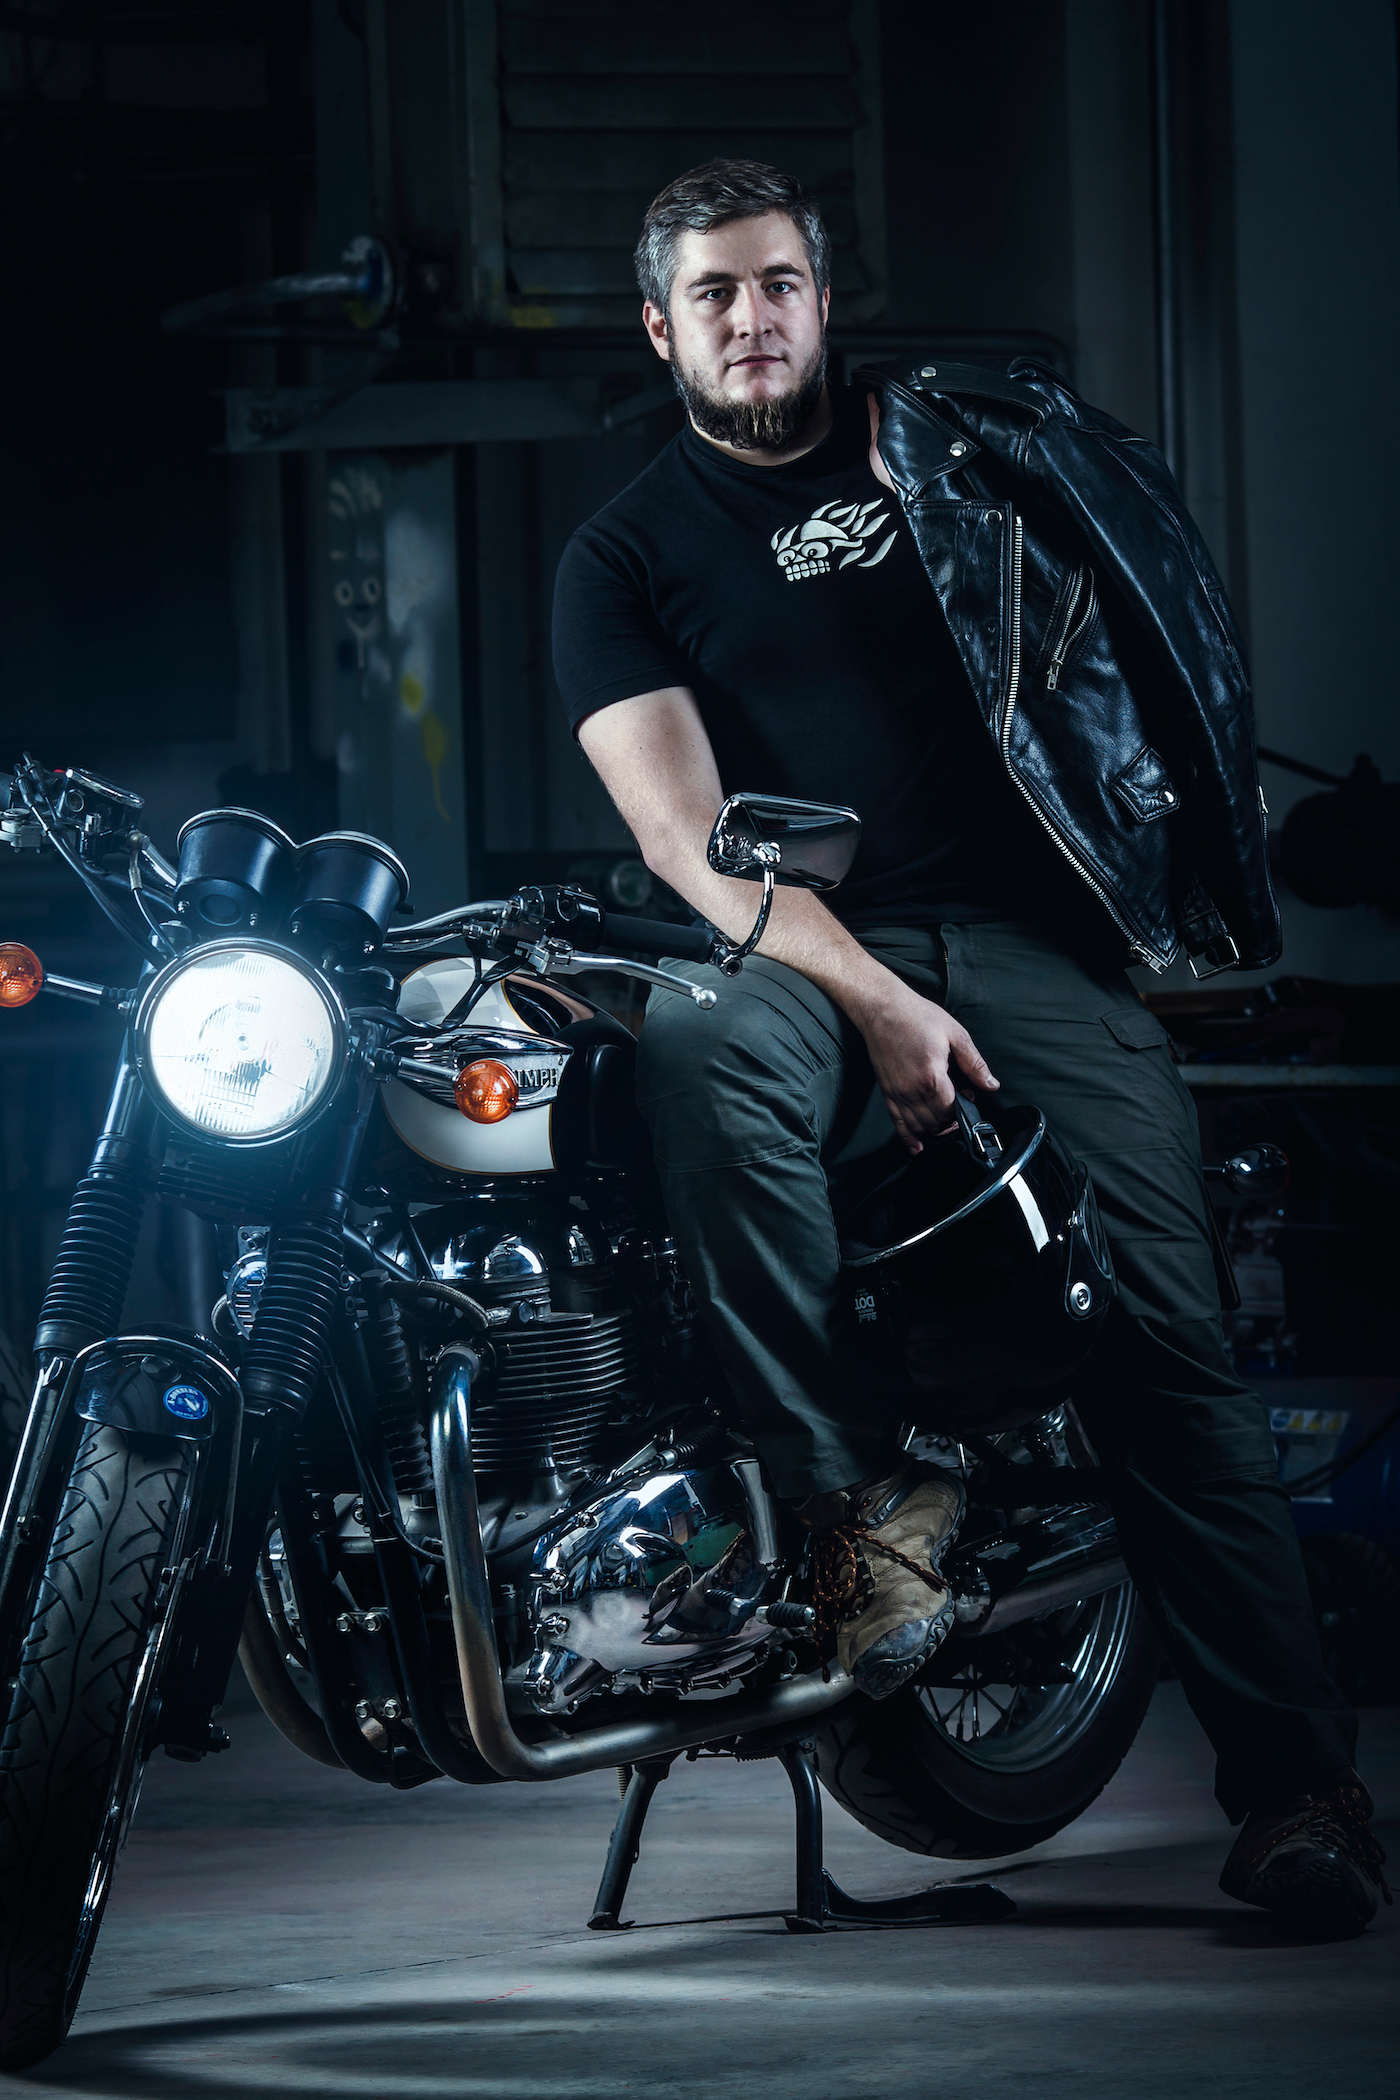 Bike motorbike garage coffee racer biker motorcyclists triumph Workshop engine portrait